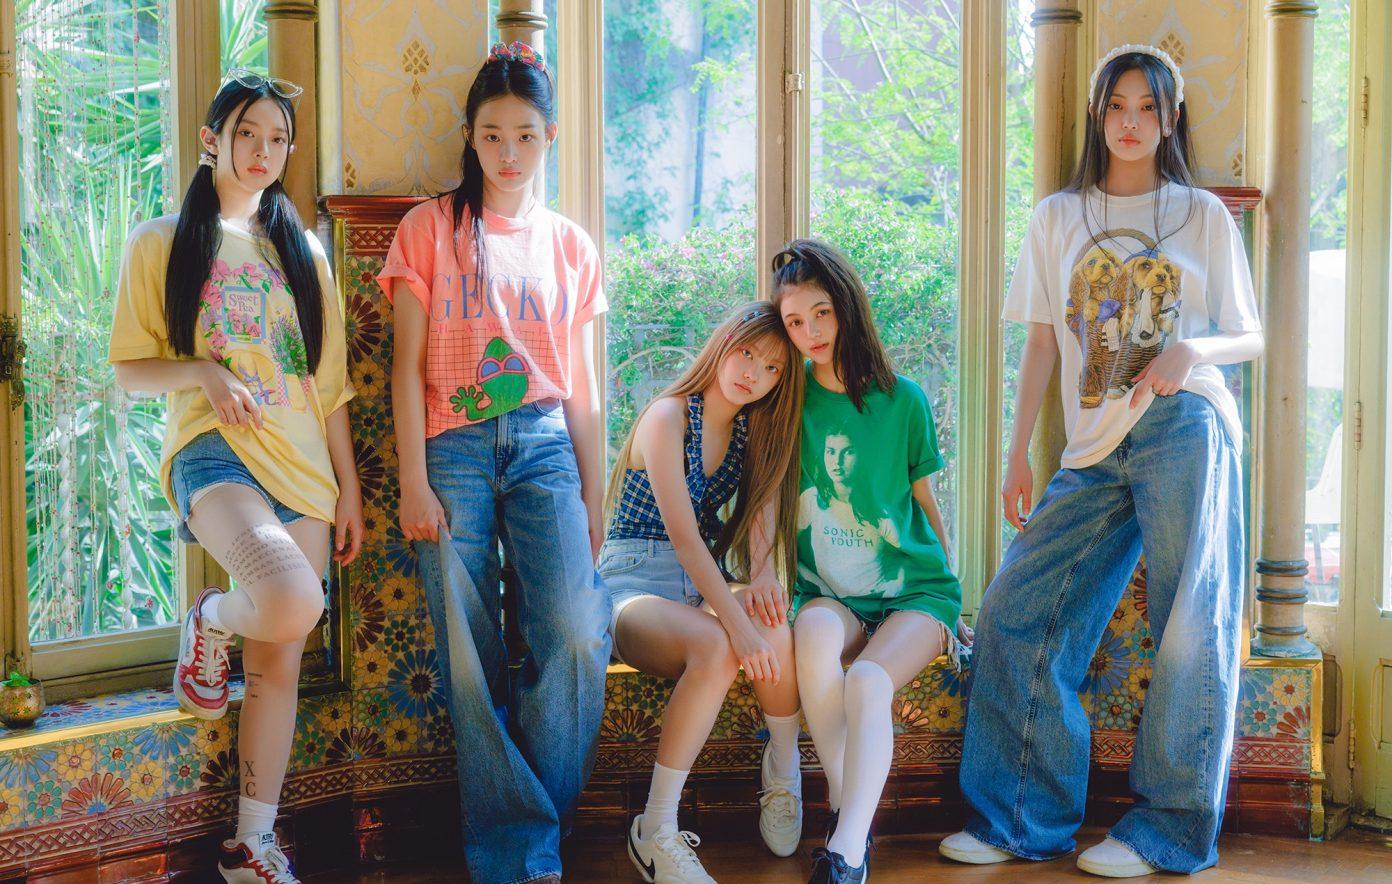 Sydkoreanska New Jeans har gjort en strålande ep där Ariana Grandes ”Thank u next” möter UK garage-inspirerad k-pop.